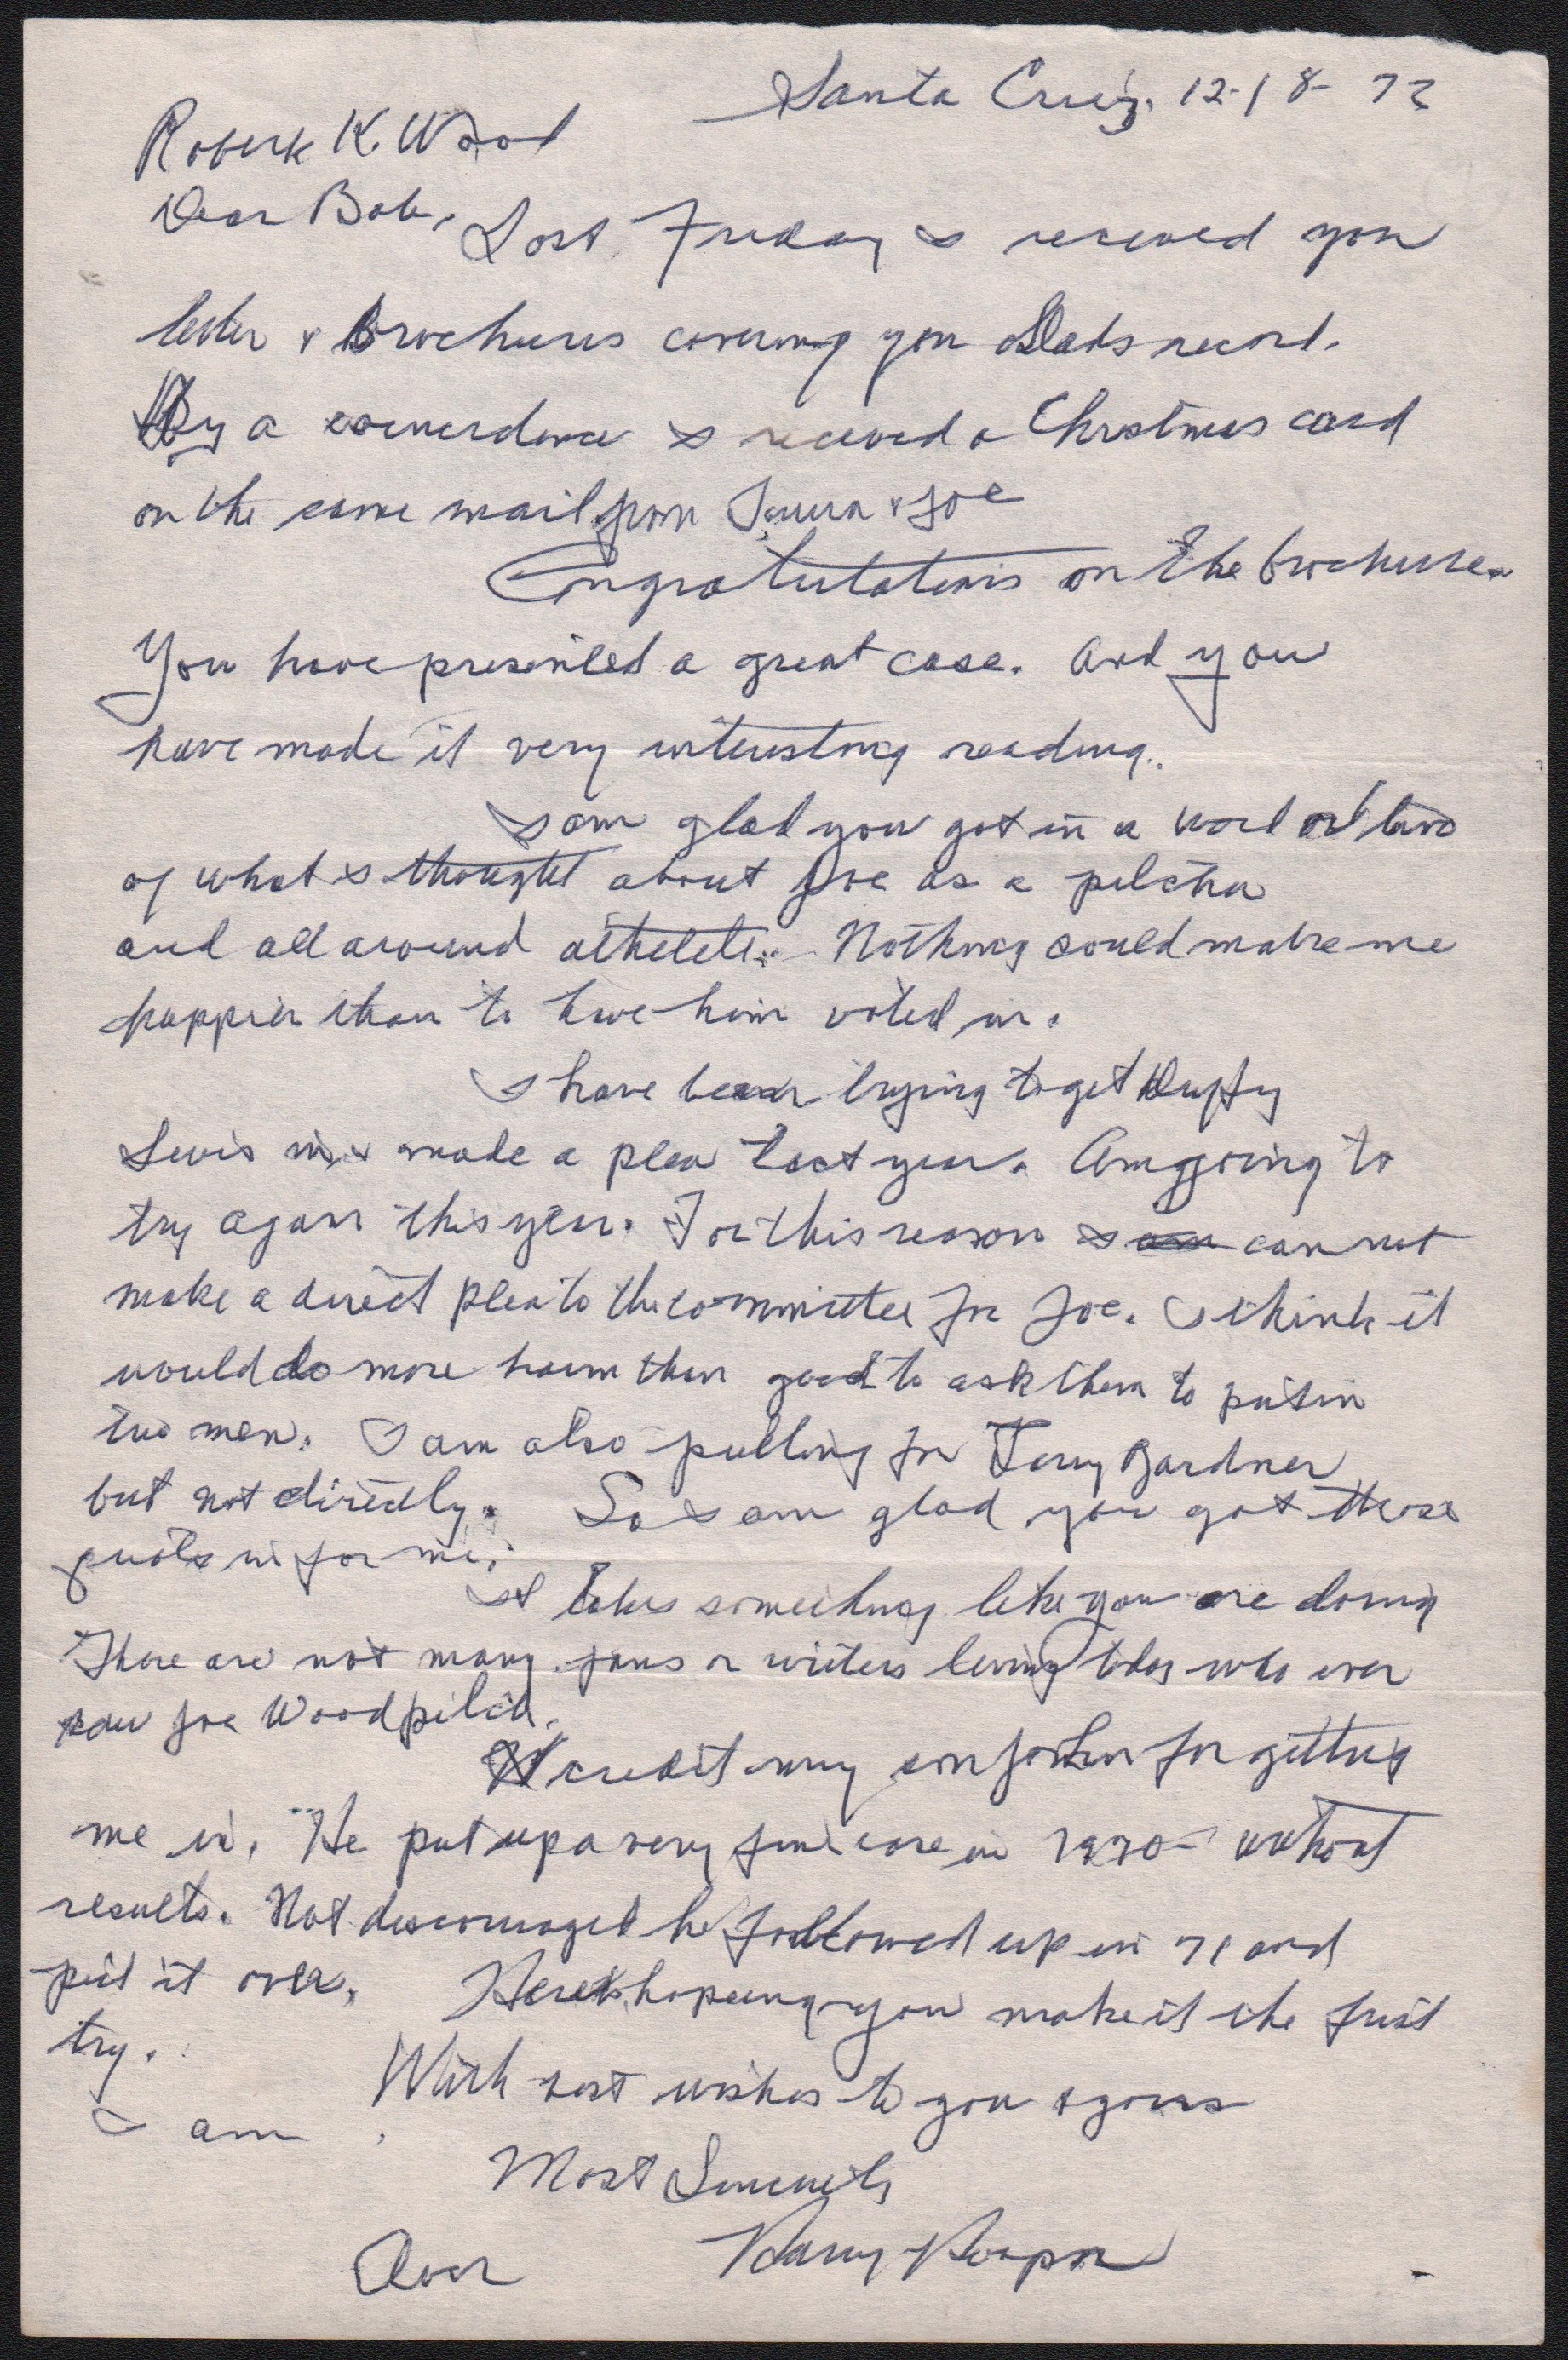 1973 Harry Hooper Handwritten Letter To Smoky Joe Wood's Son